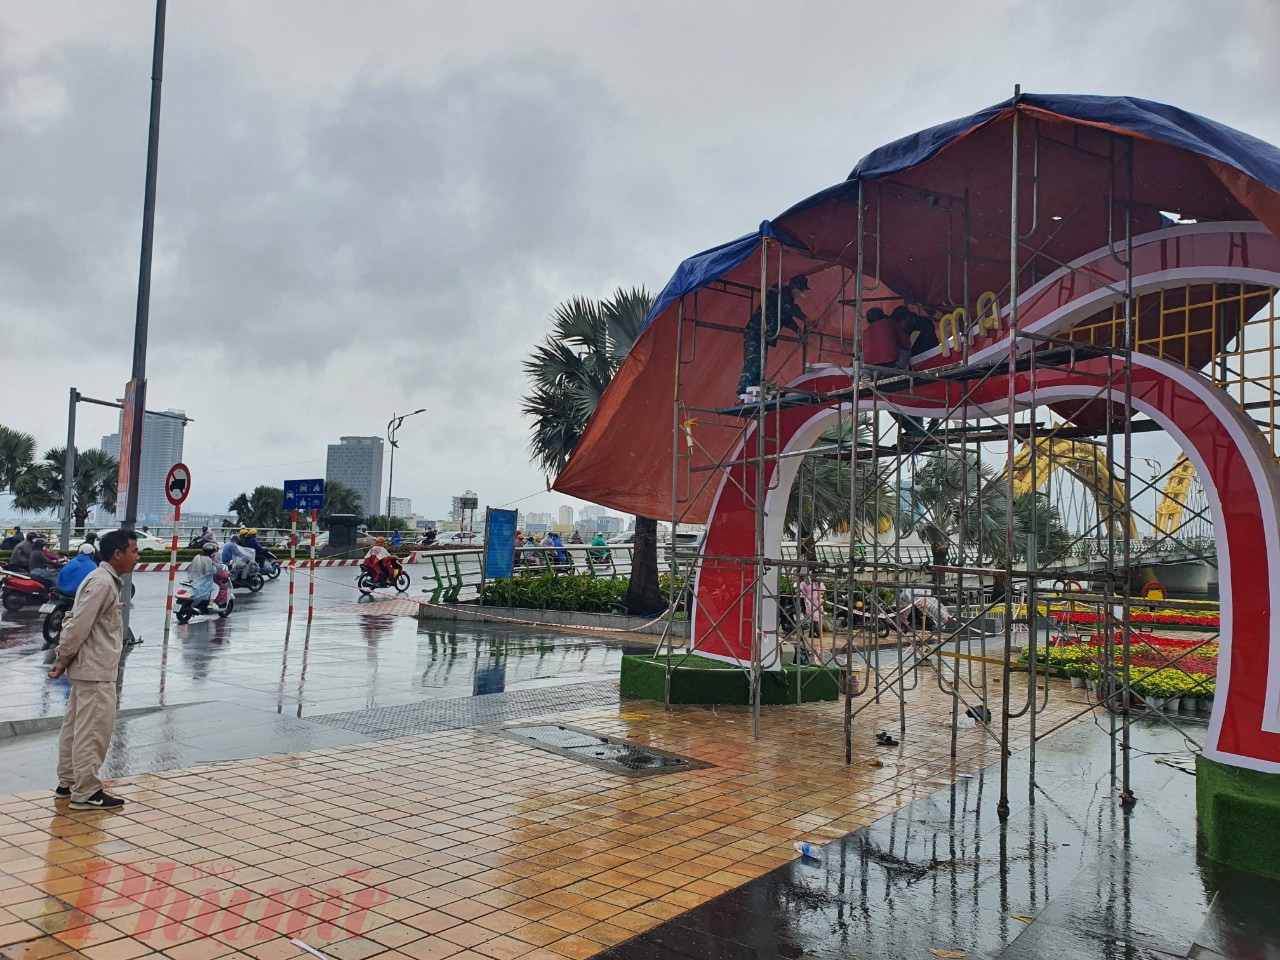 Dự kiến, toàn bộ công trình trang trí hoa và điện chiếu sáng Tết âm lịch của thành phố Đà Nẵng sẽ hoàn thành vào ngày 19/1, tức ngày 28 tháng 12 âm lịch để phục vụ du khách và người dân tham quan vui Xuân đón Tết.